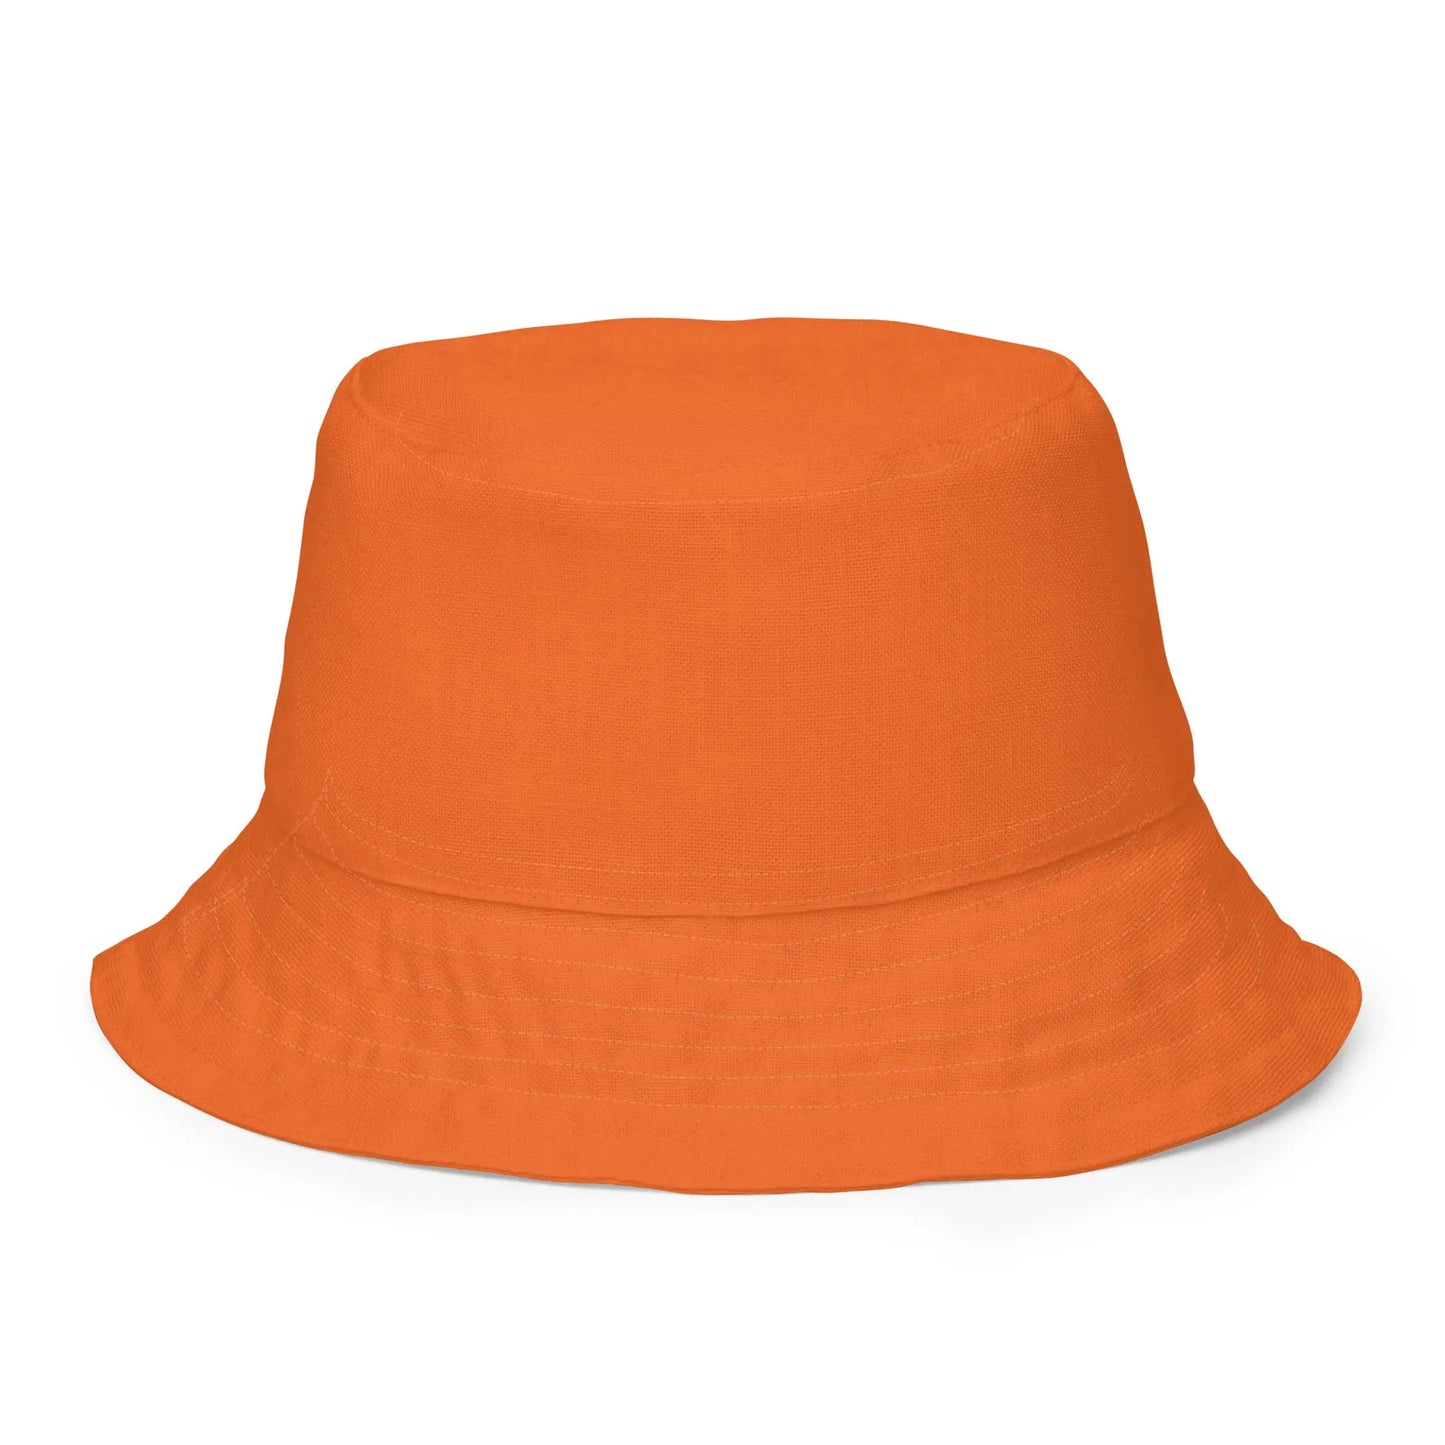 Reversible orange and pink logo  bucket hat